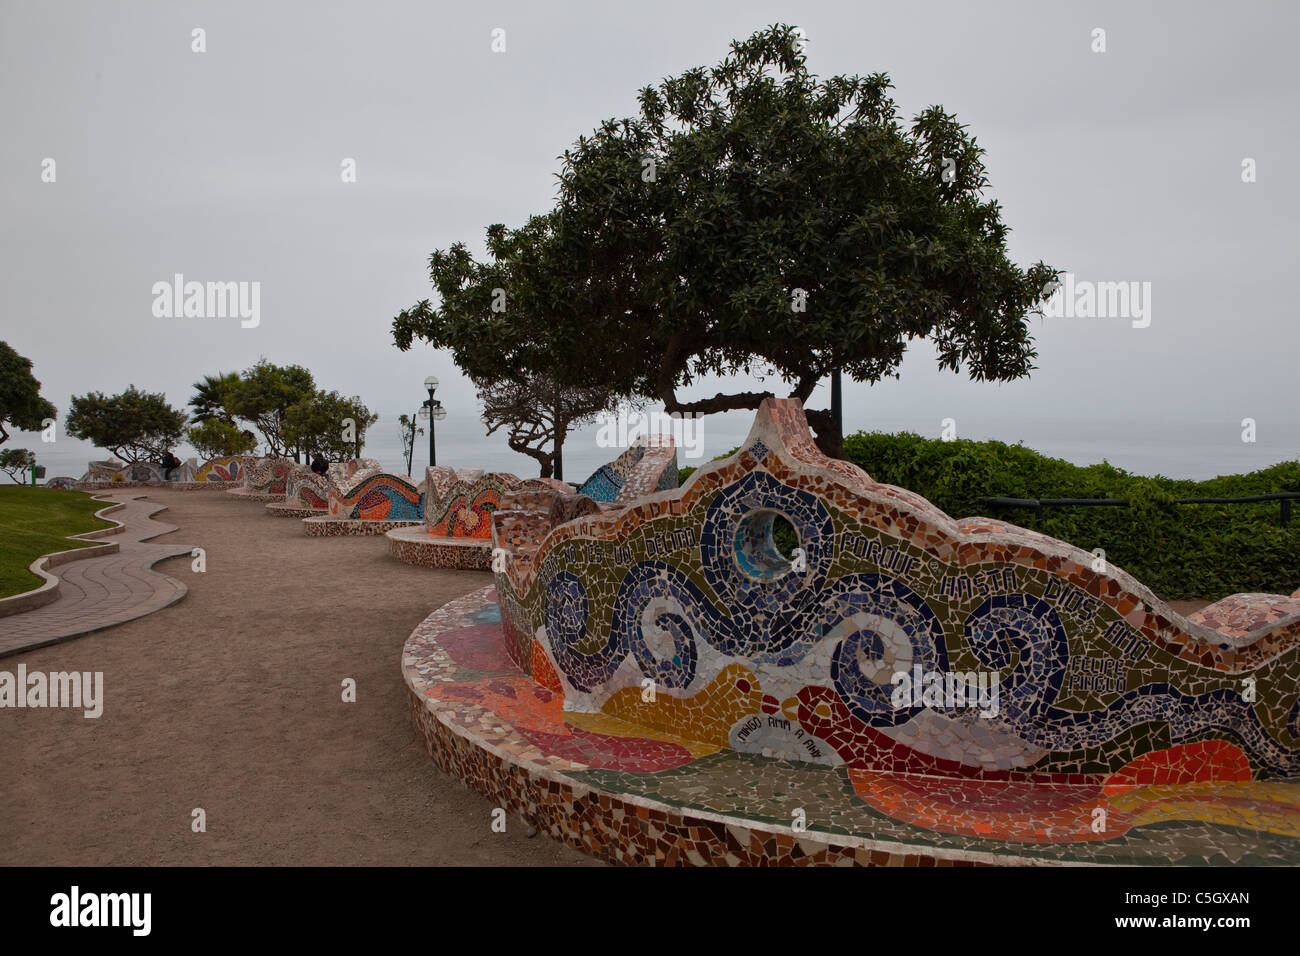 Piastrellate parete curva (ceramica e mosaico) in El Parque del Amor (Amore) parco affacciato sull'oceano, Miraflores Lima, Perù, Sud America Foto Stock